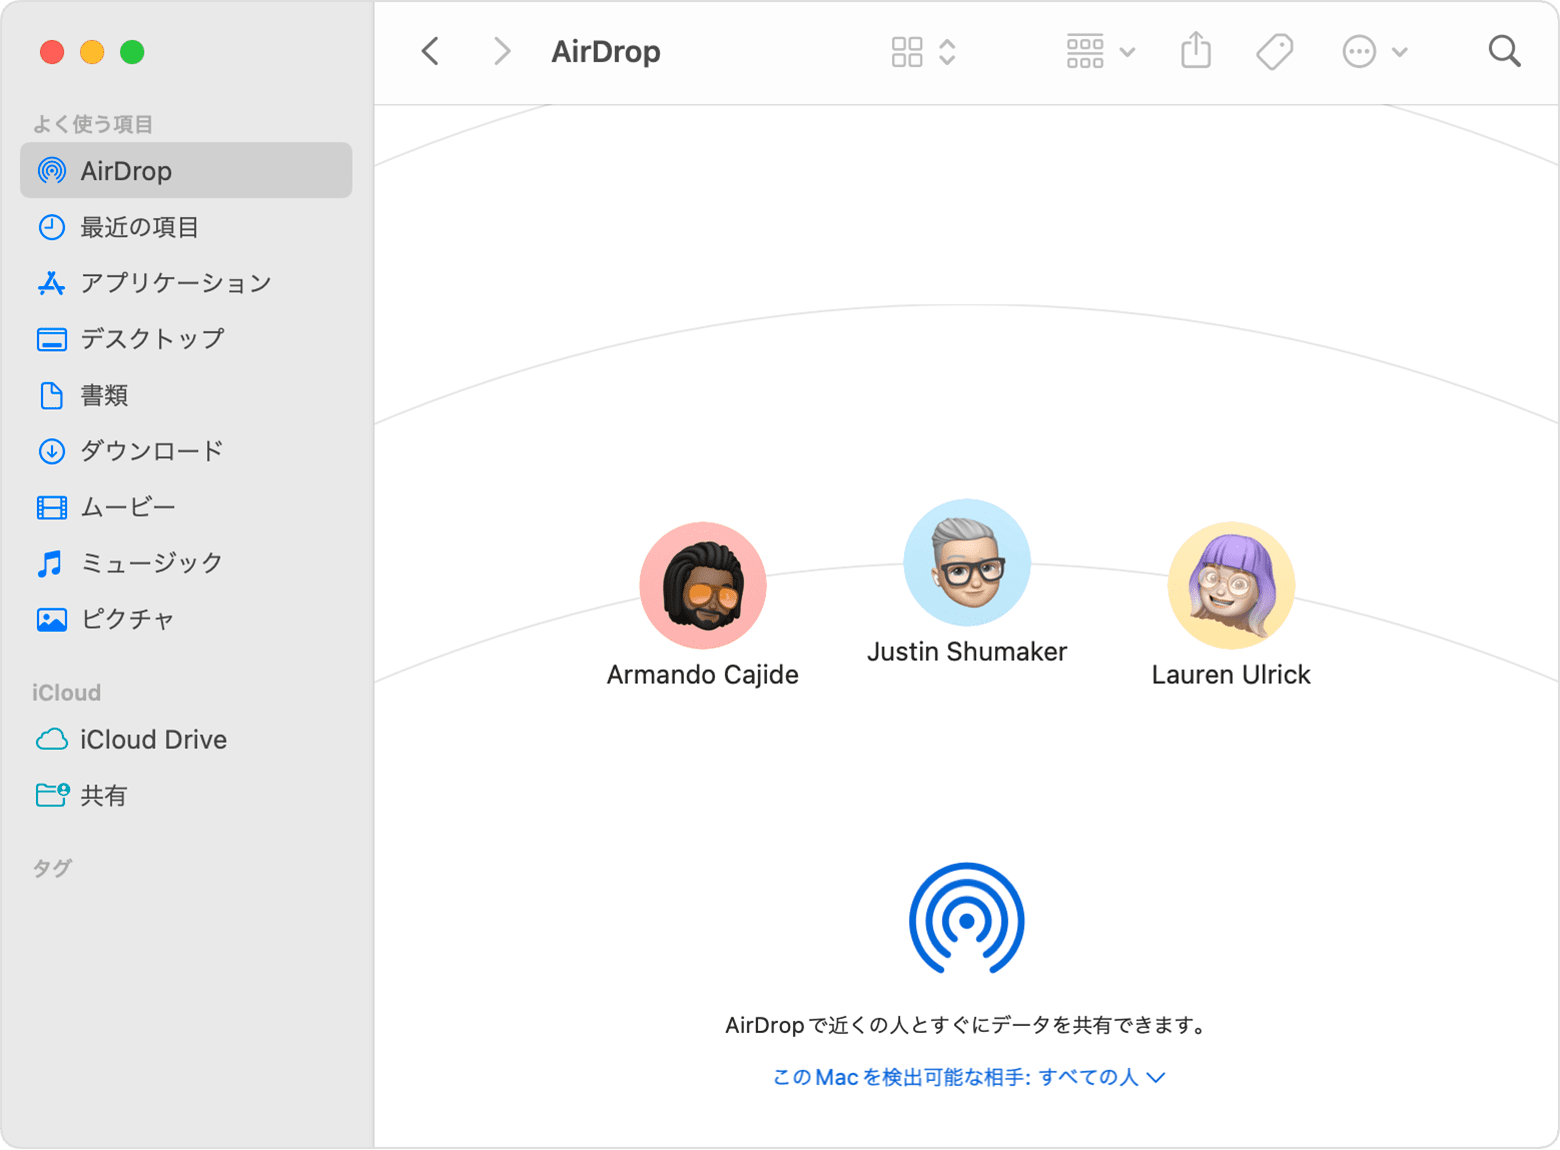 Mac で AirDrop を使う - Apple サポート (日本)